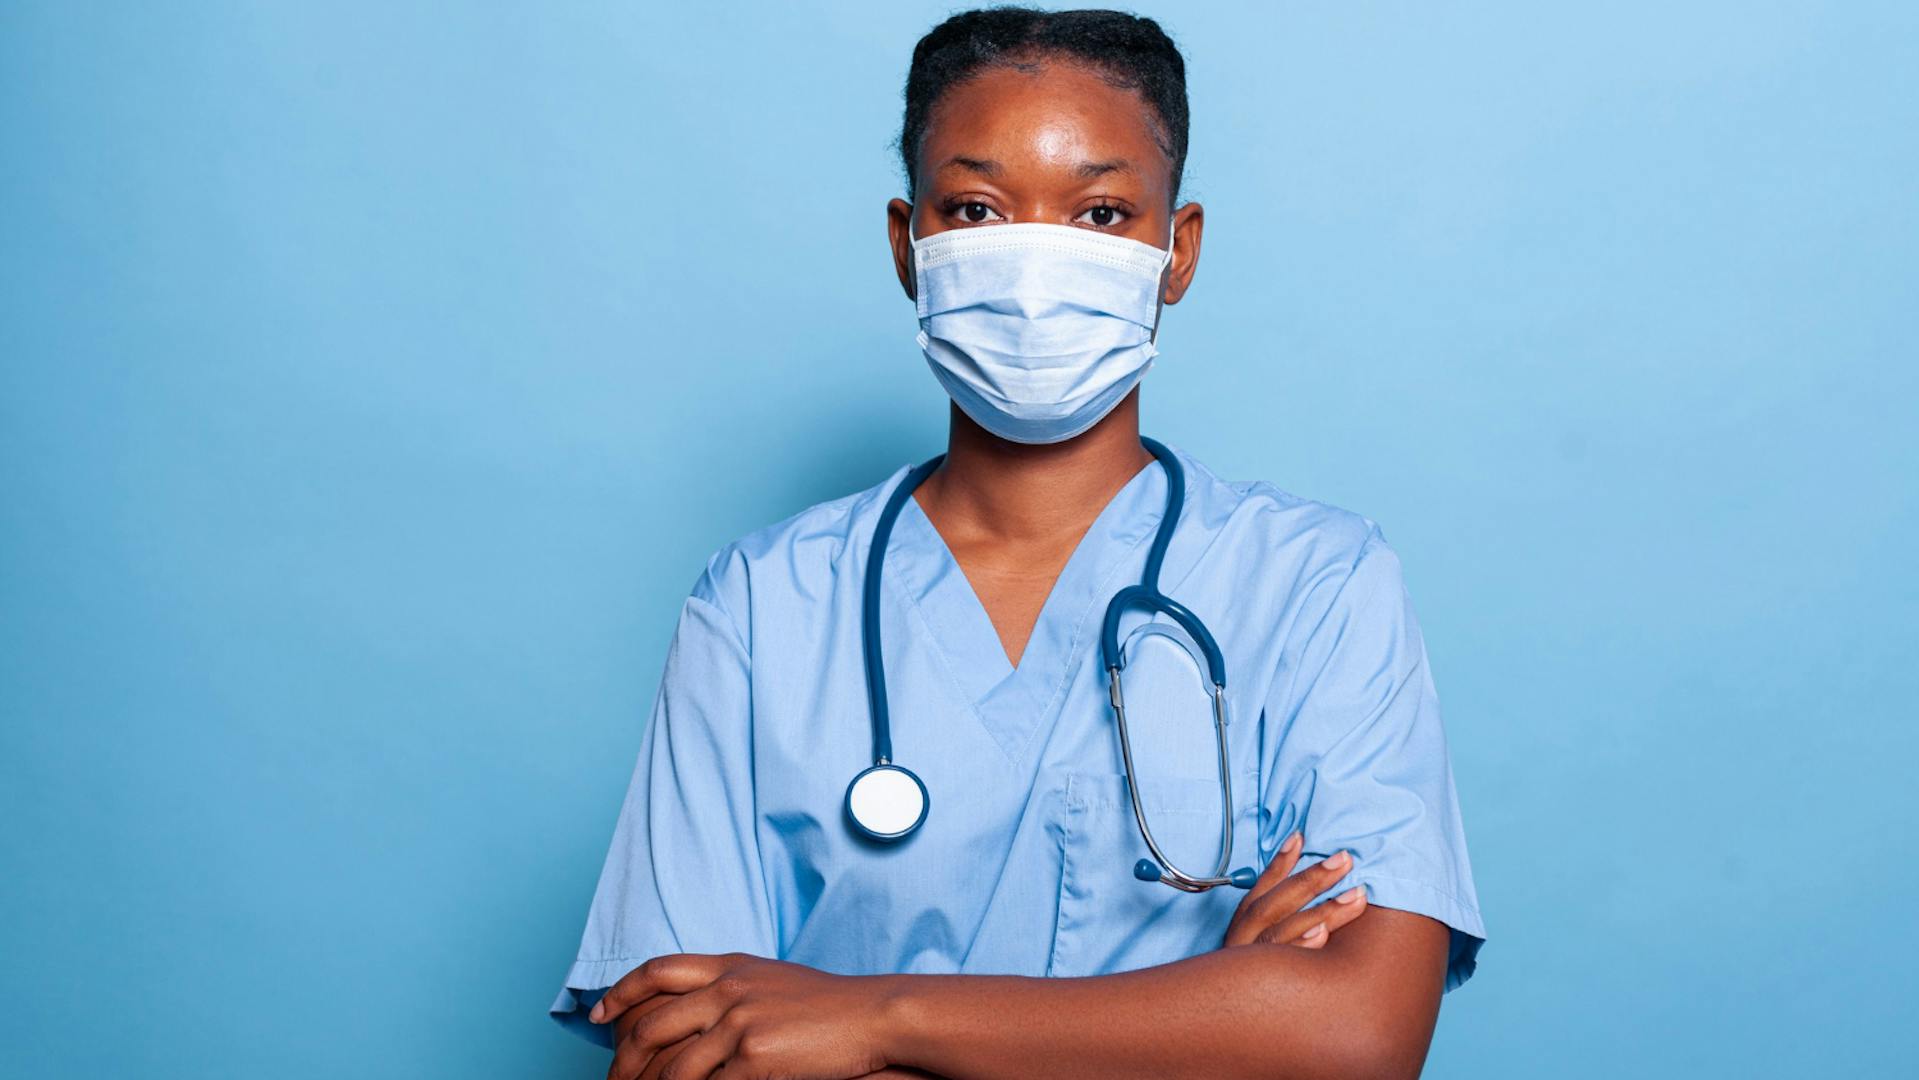 médica com roupa cirúrgica azul claro com parede também azul ao fundo